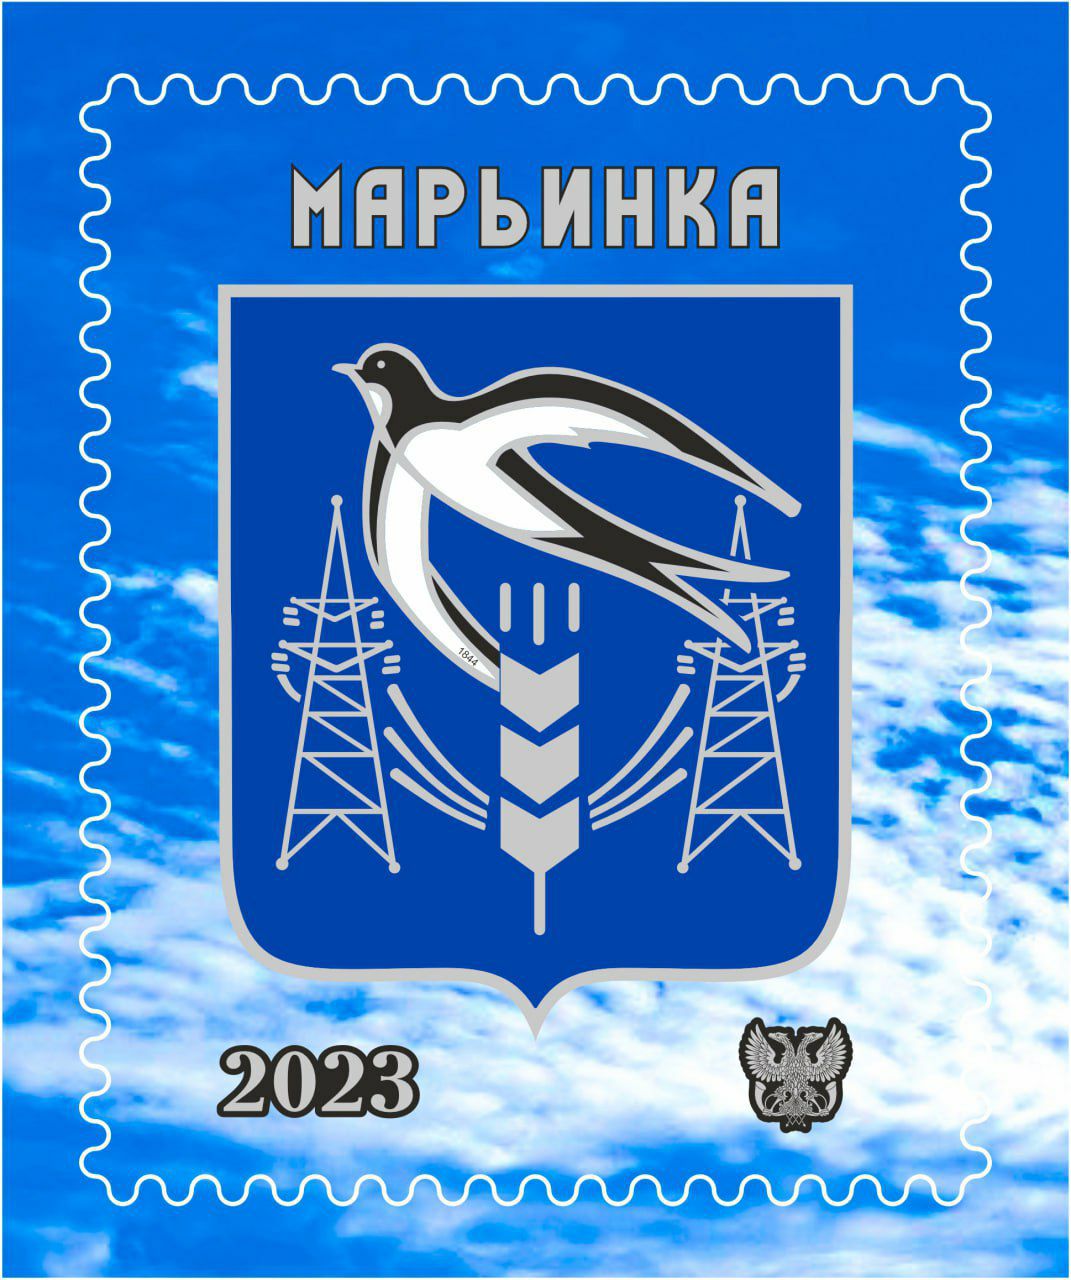 В честь освобождения Марьинки «Почта Донбасса» презентовала новую марку